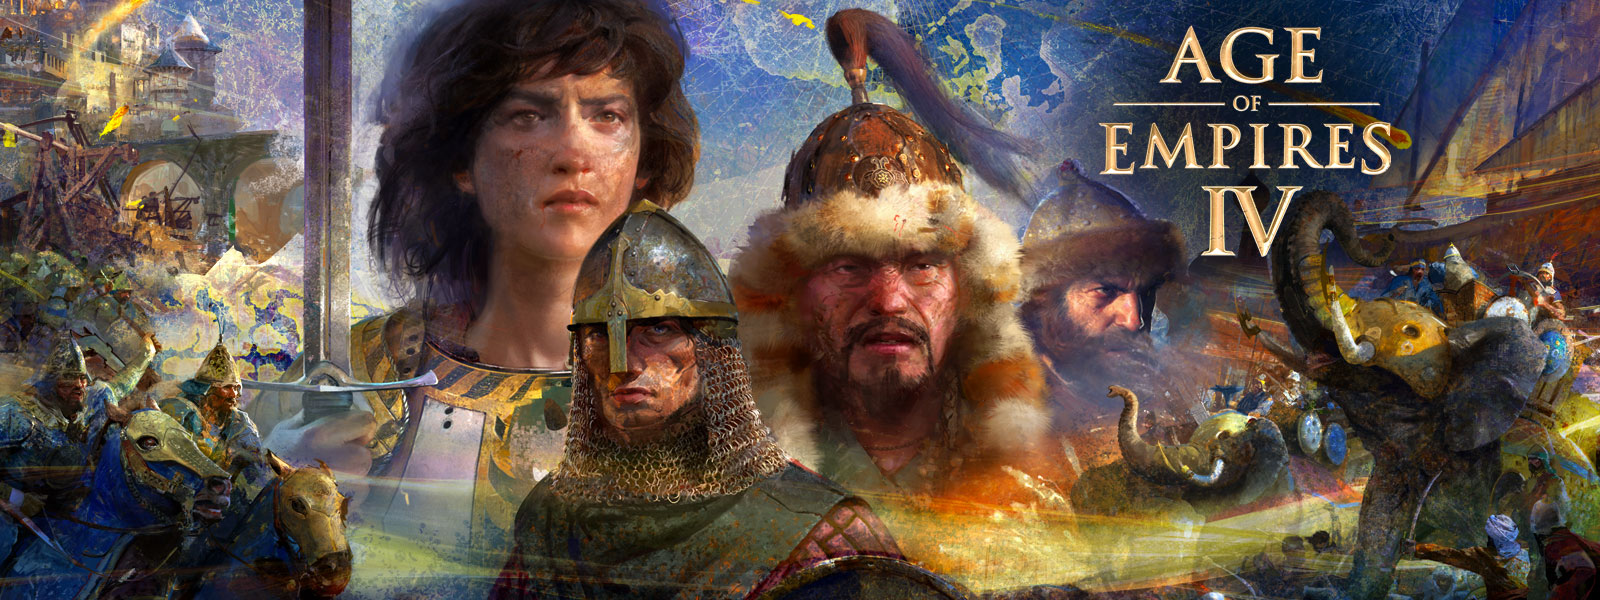 Age of Empires IV. Четыре персонажа на фоне карты в окружении сцен войны, слонов и людей на лошадях